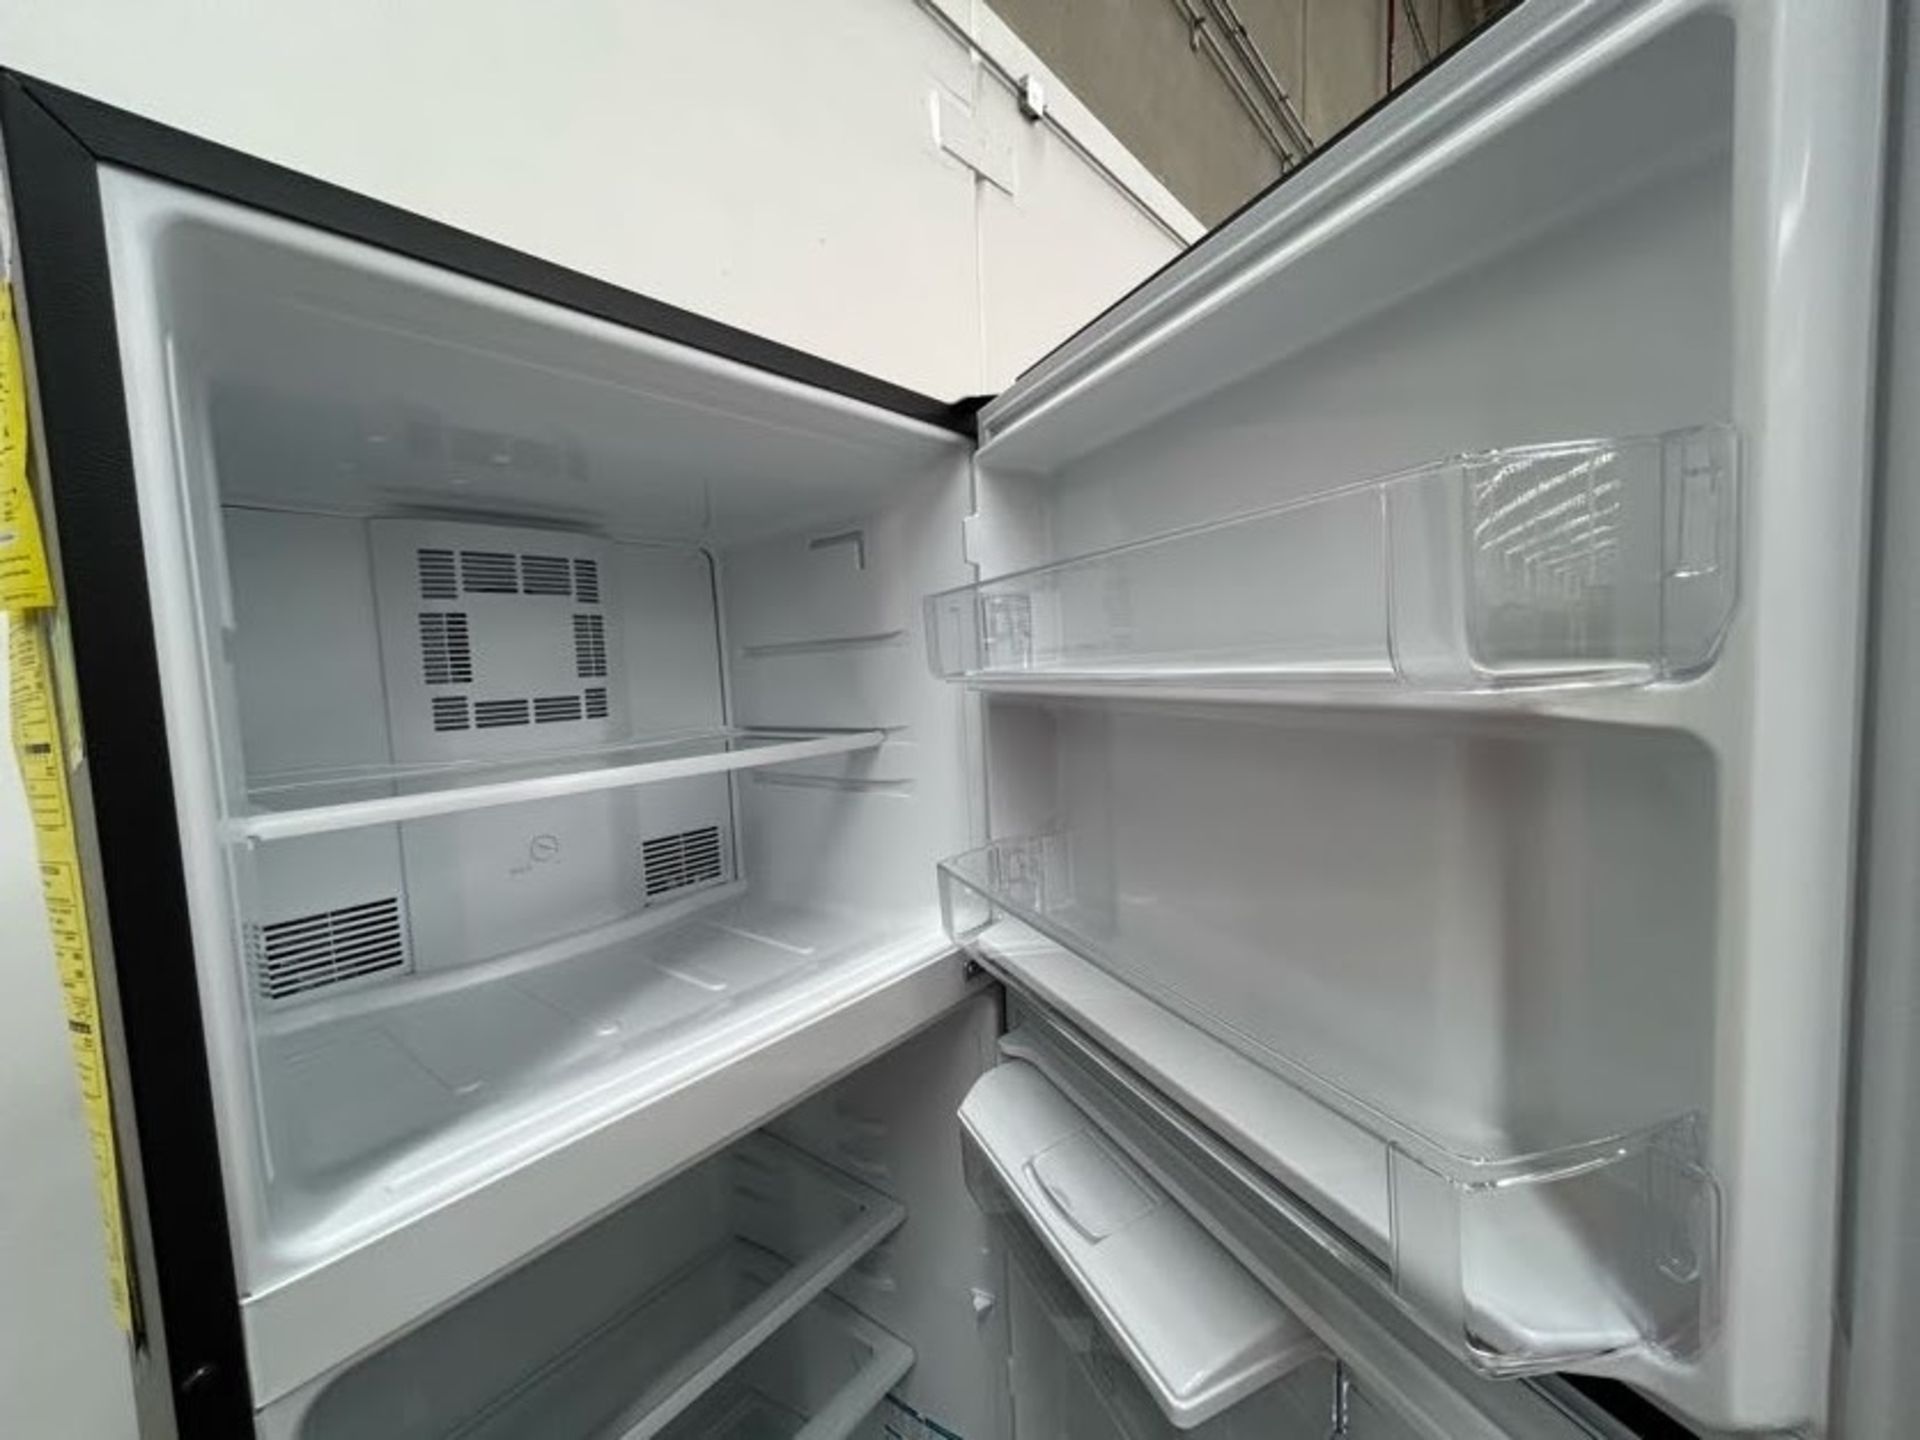 Lote de 2 Refrigeradores contiene: 1 Refrigerador con dispensador de agua Marca MABE, Modelo RME360 - Image 6 of 8